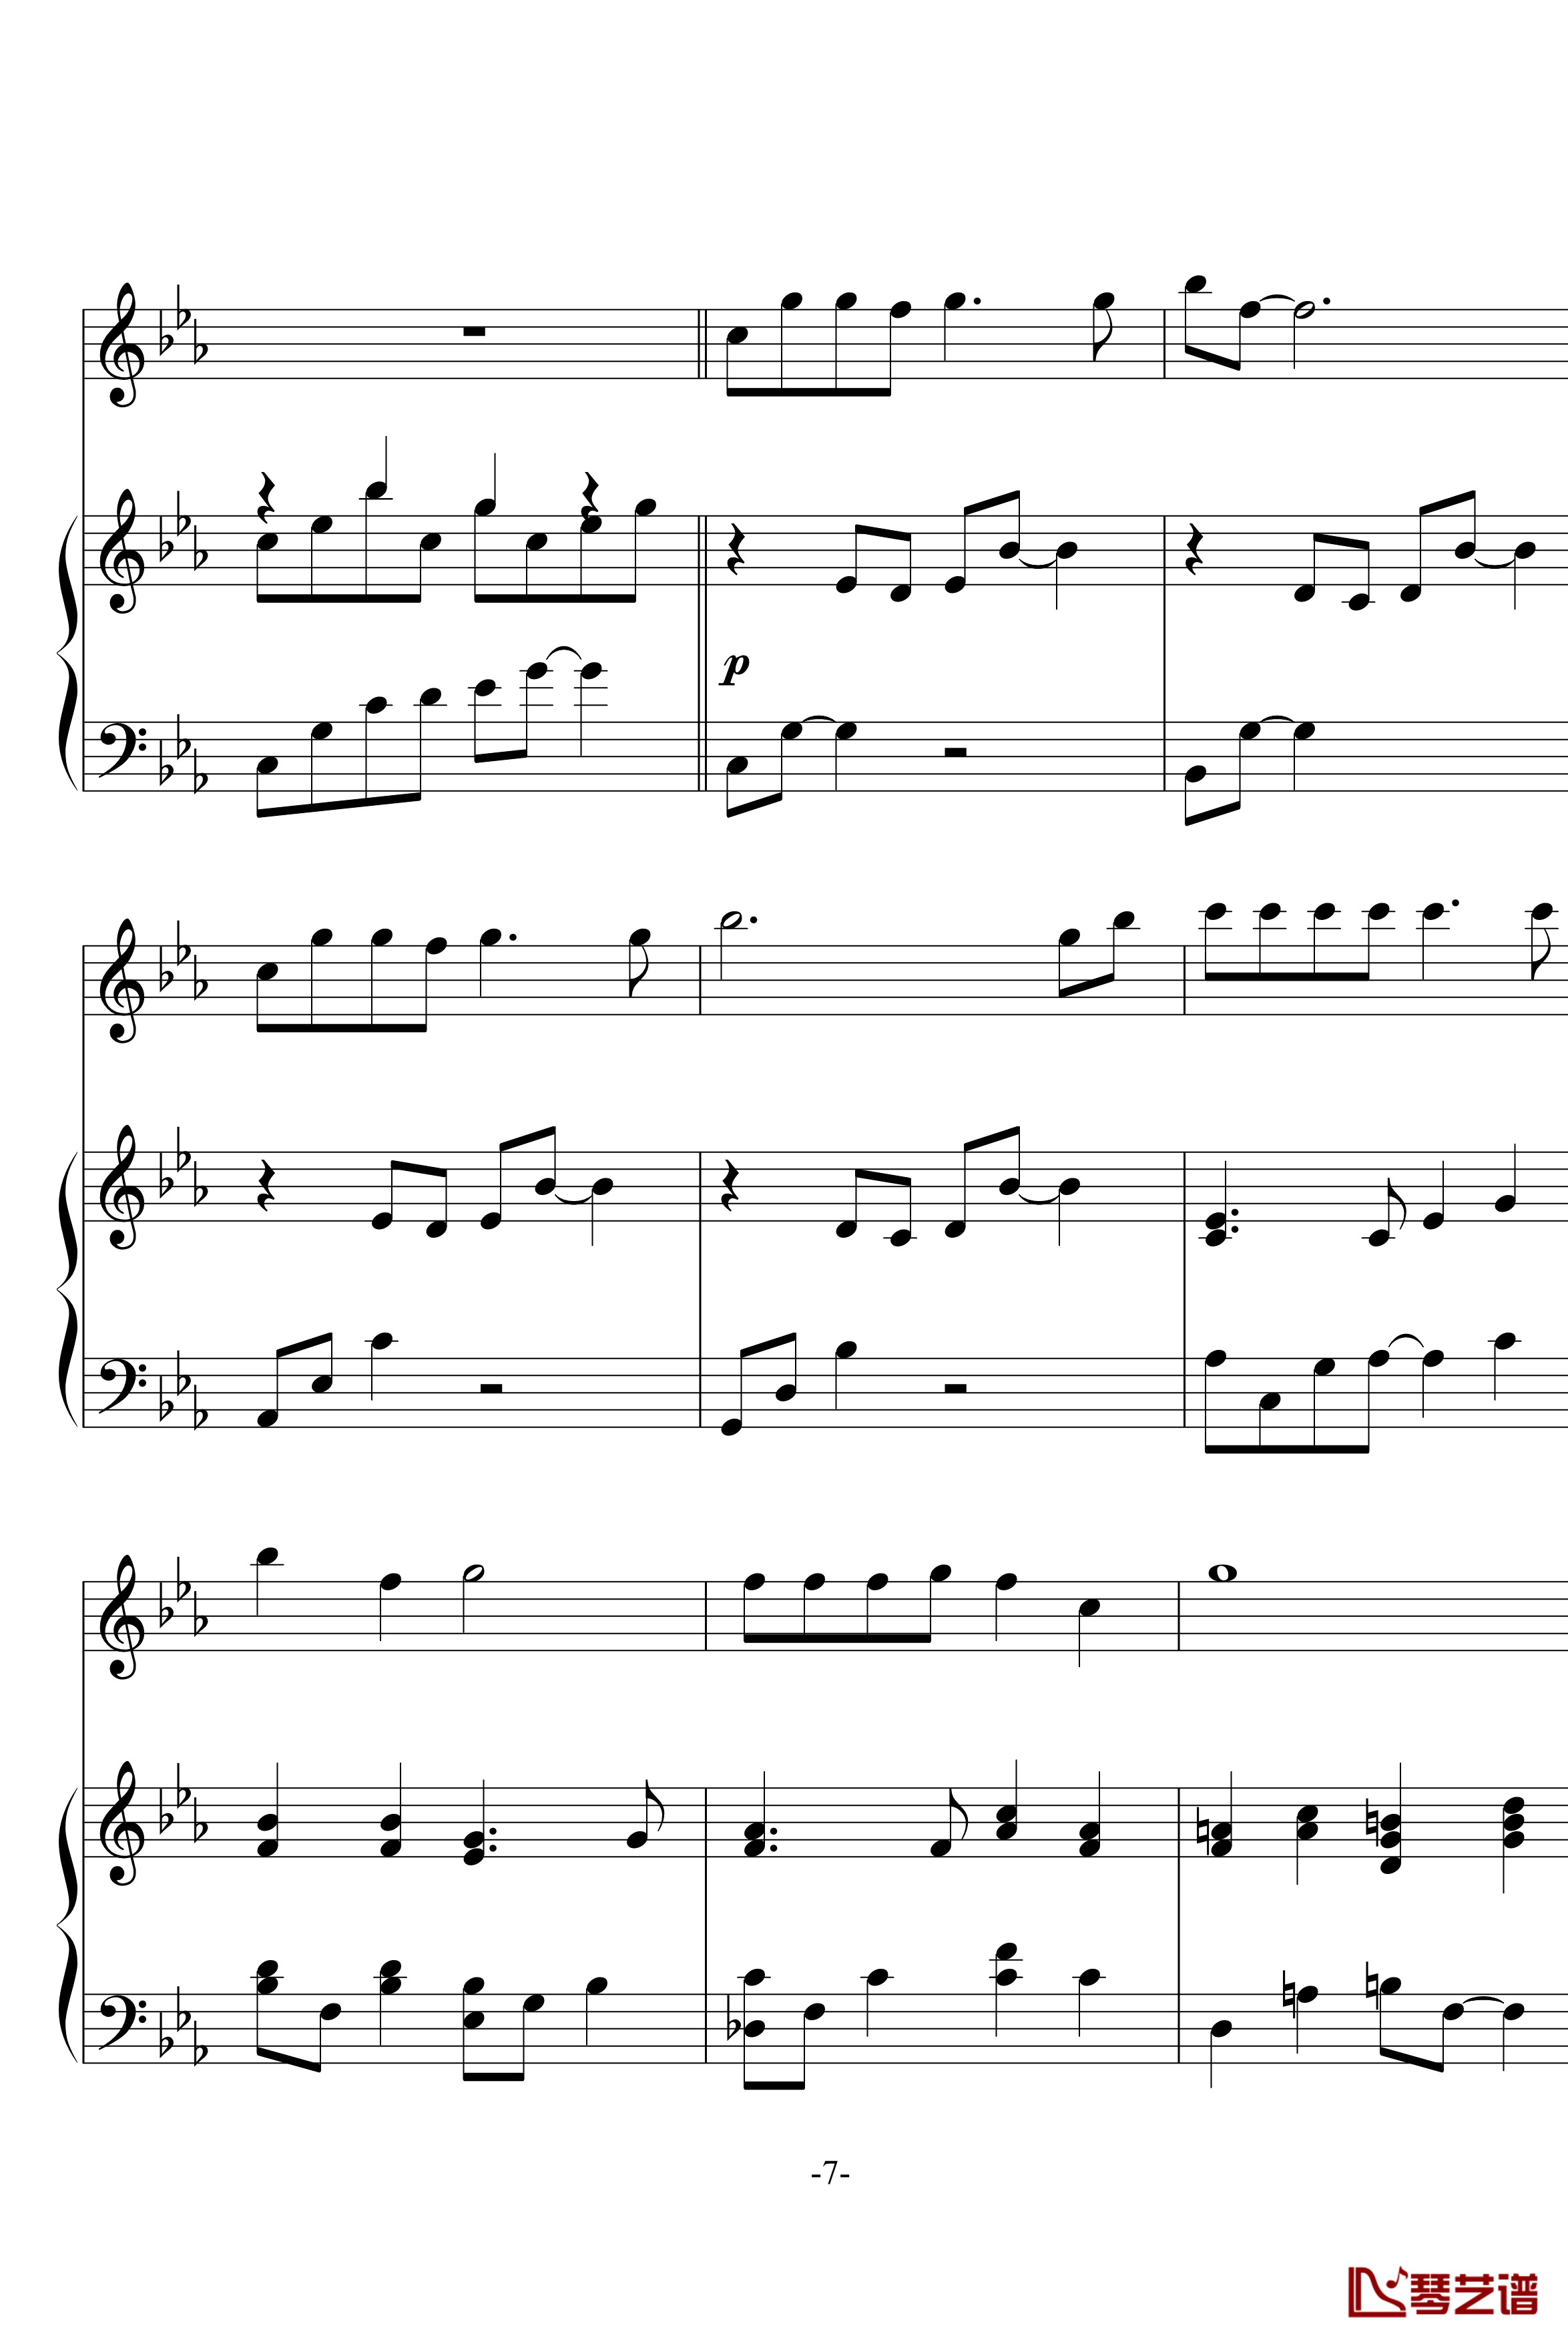 幽灵公主笛子与钢琴钢琴谱-OST-久石让7